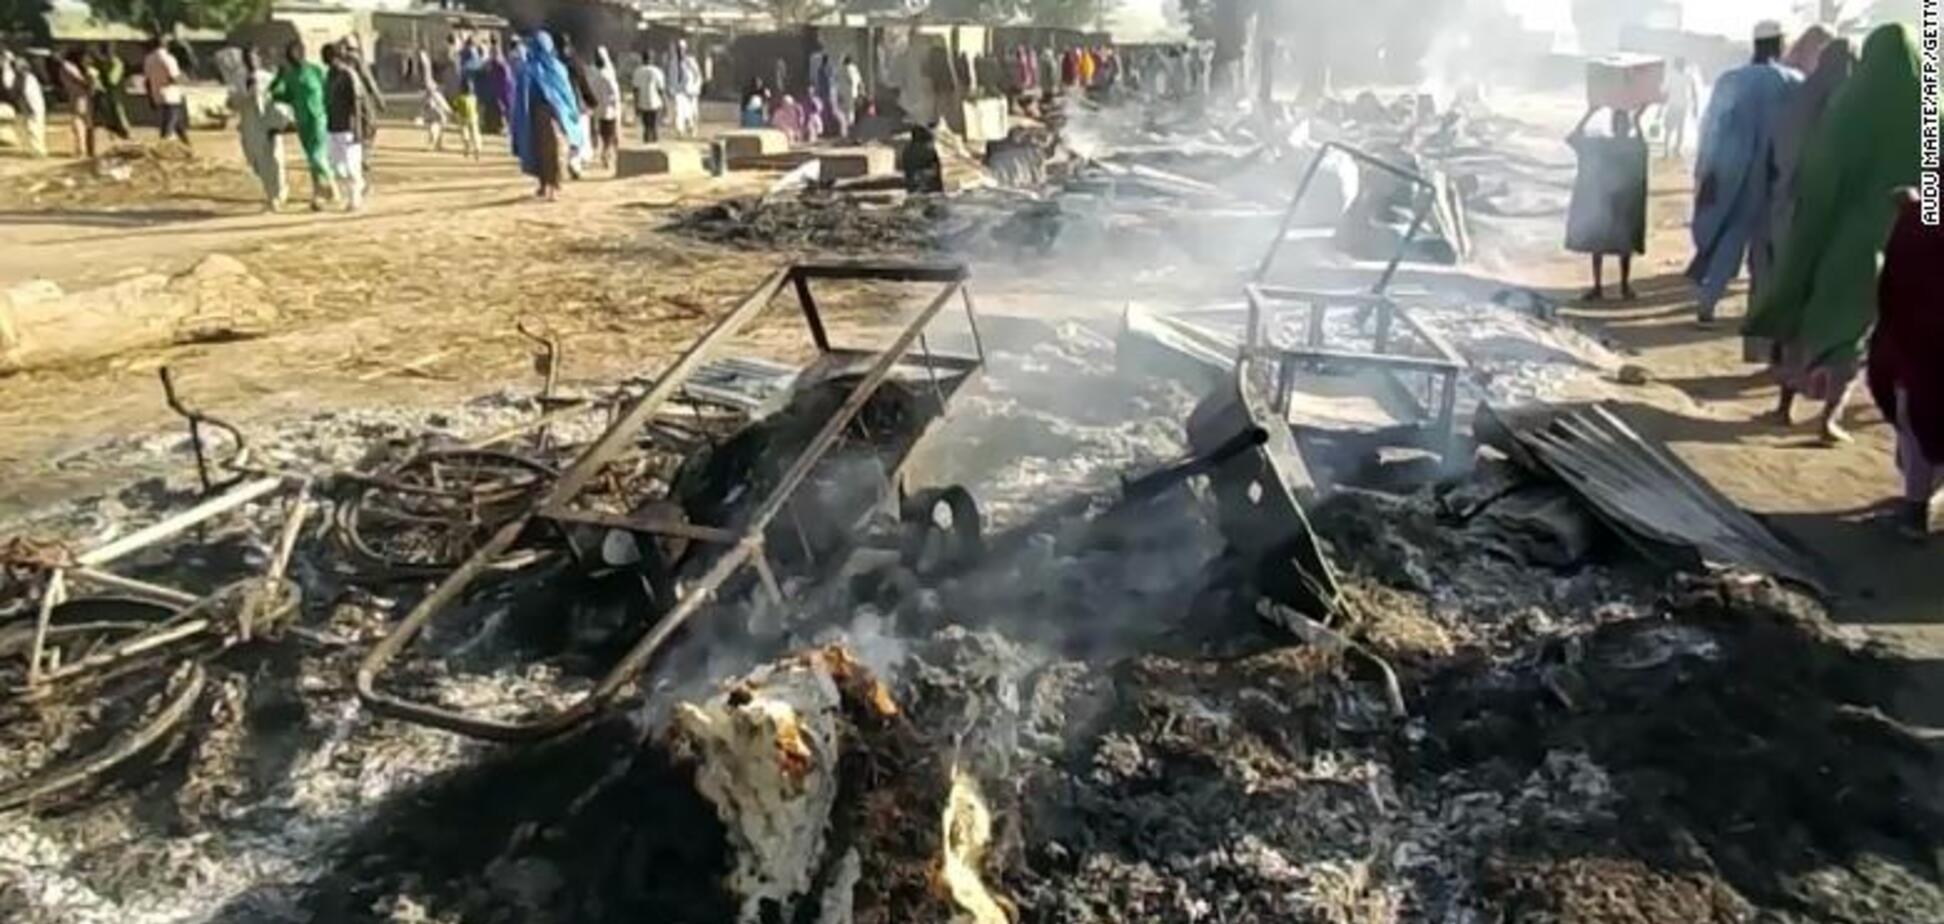 Атакували на похоронах: у Нігерії 'Боко харам' вбили 65 осіб